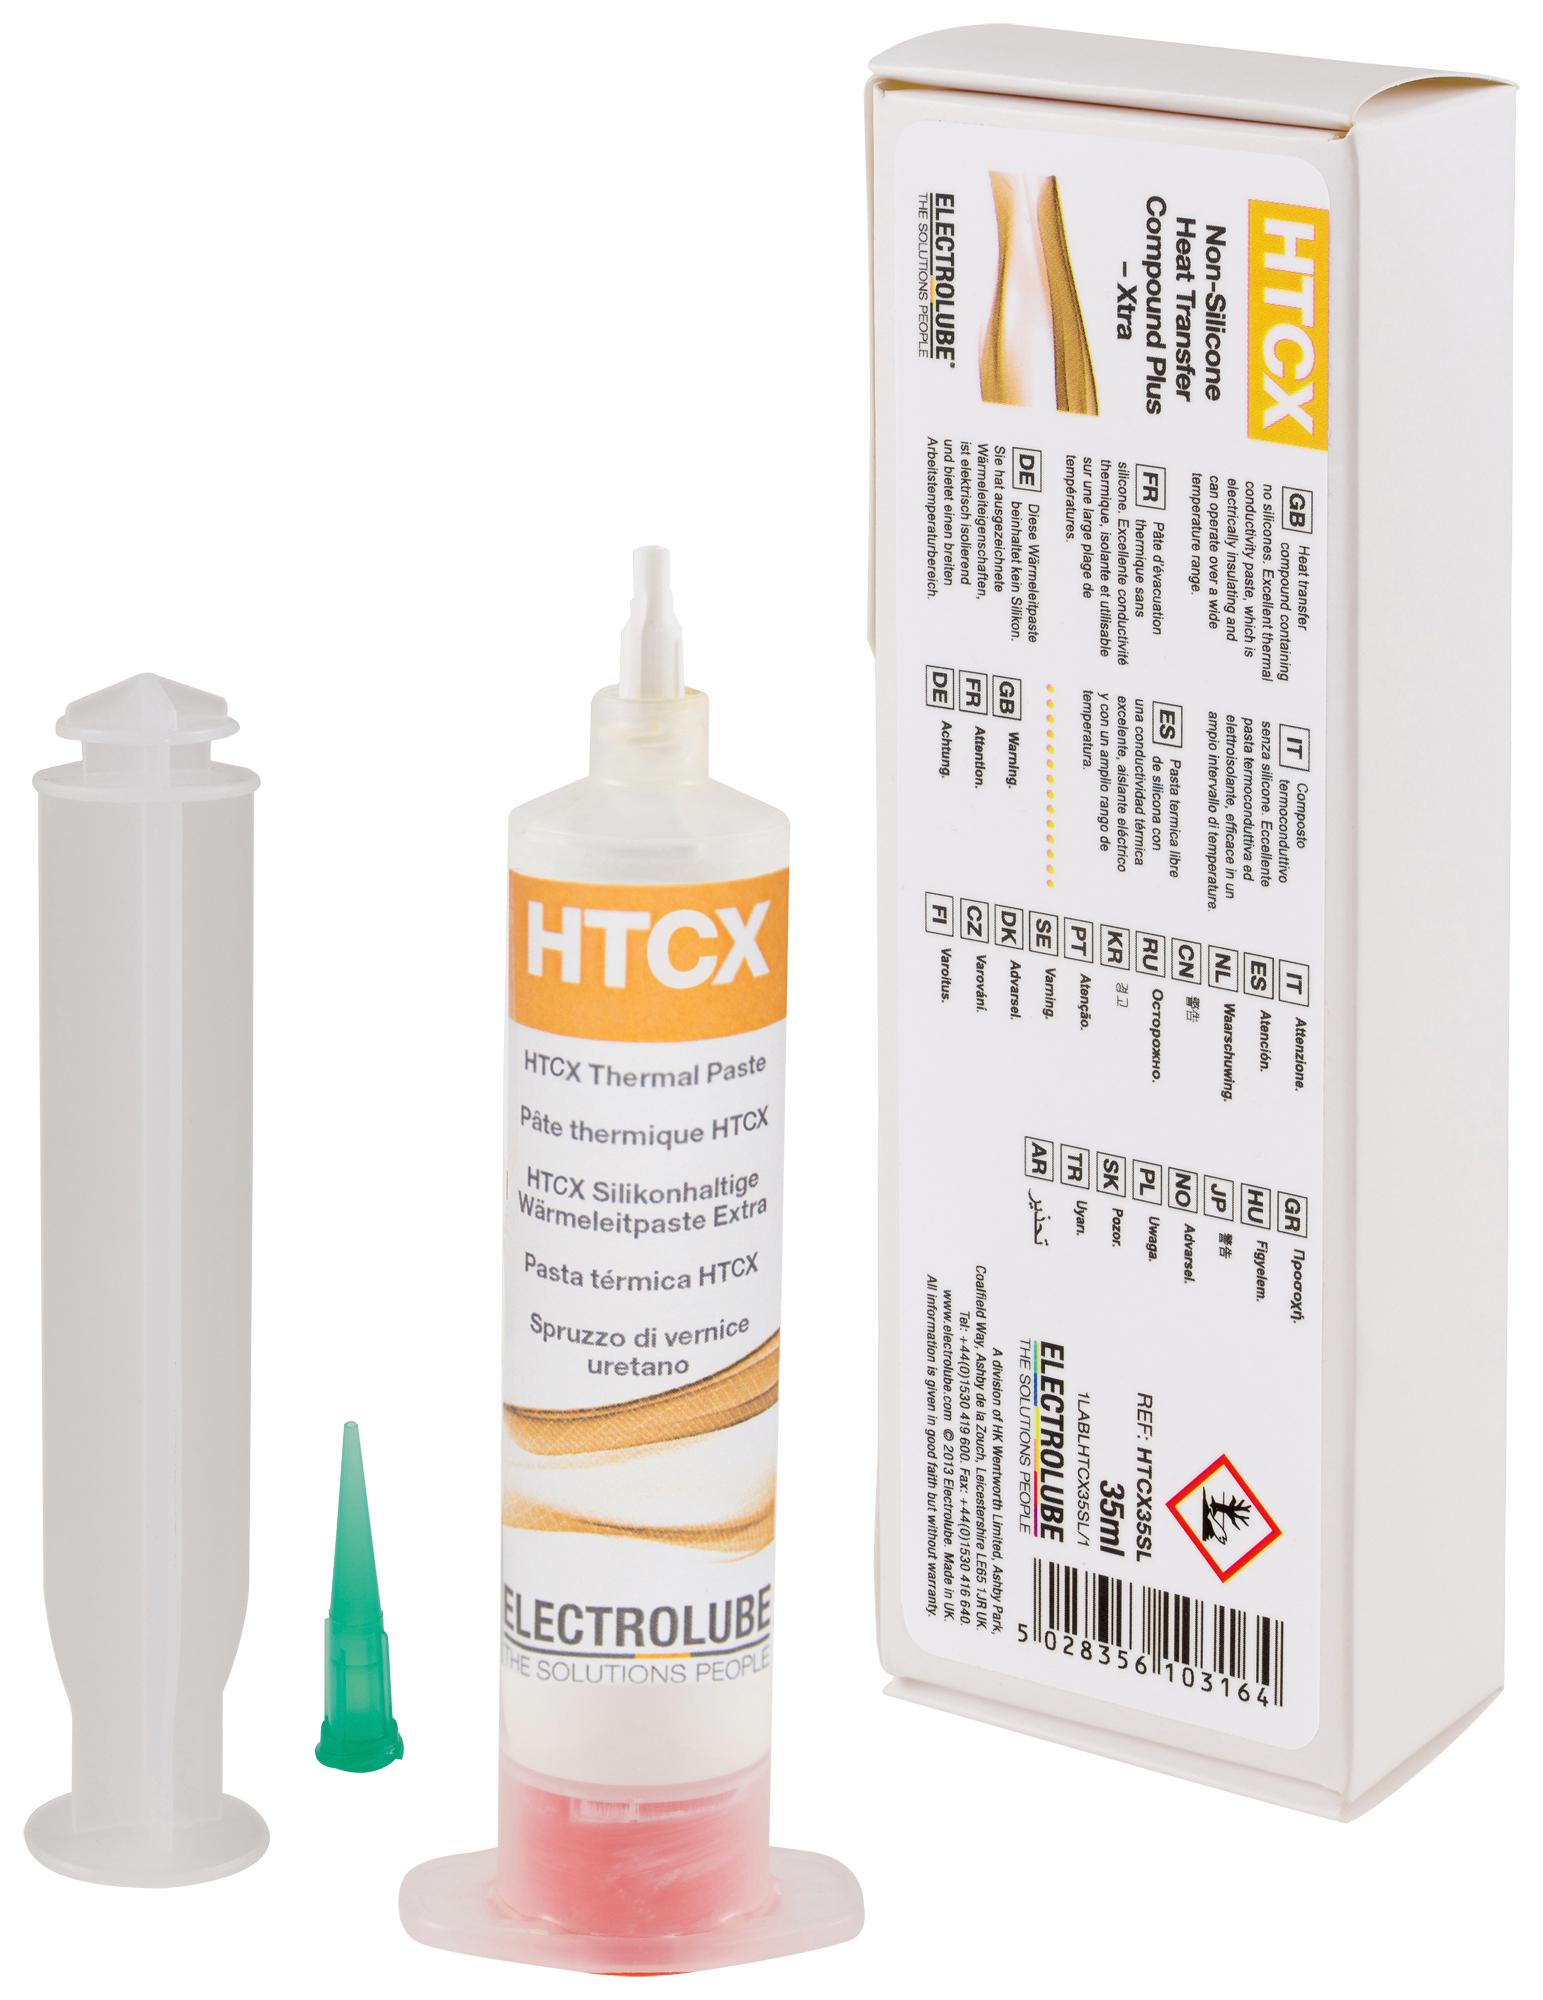 HTCX35SL COMPOUND, EXTRA, HEAT TRANSFER, HTCX ELECTROLUBE